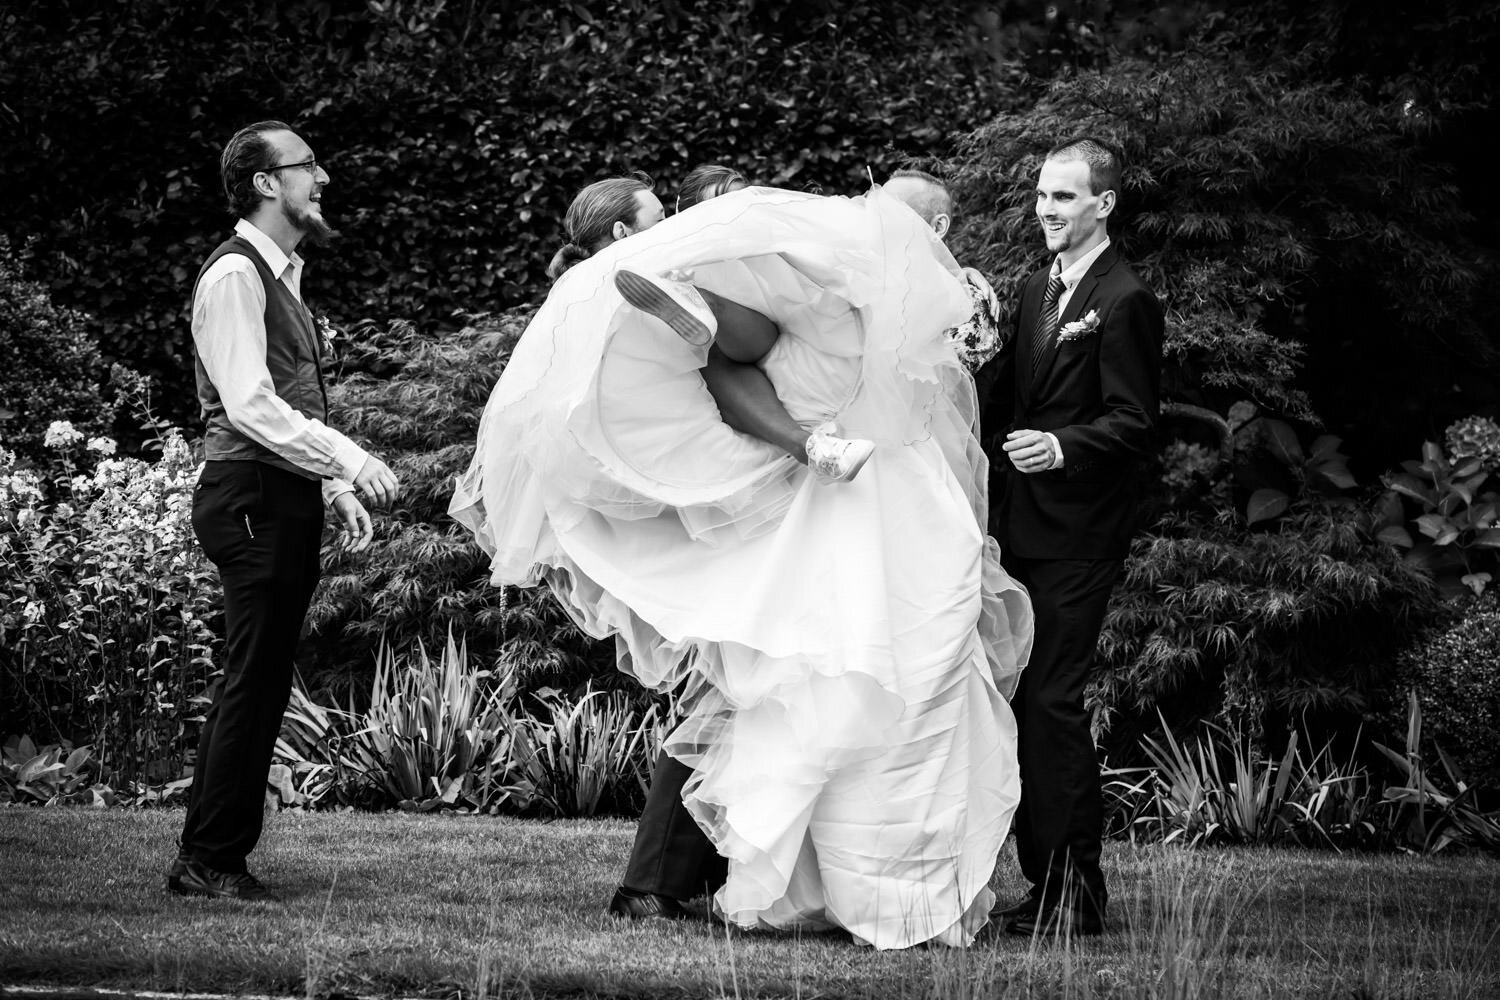 De bruid op de foto met haar broers, een grappige groepsfoto. Lekker spontaan, de bruid wordt opgetild door haar broers, maar het mislukt een beetje.